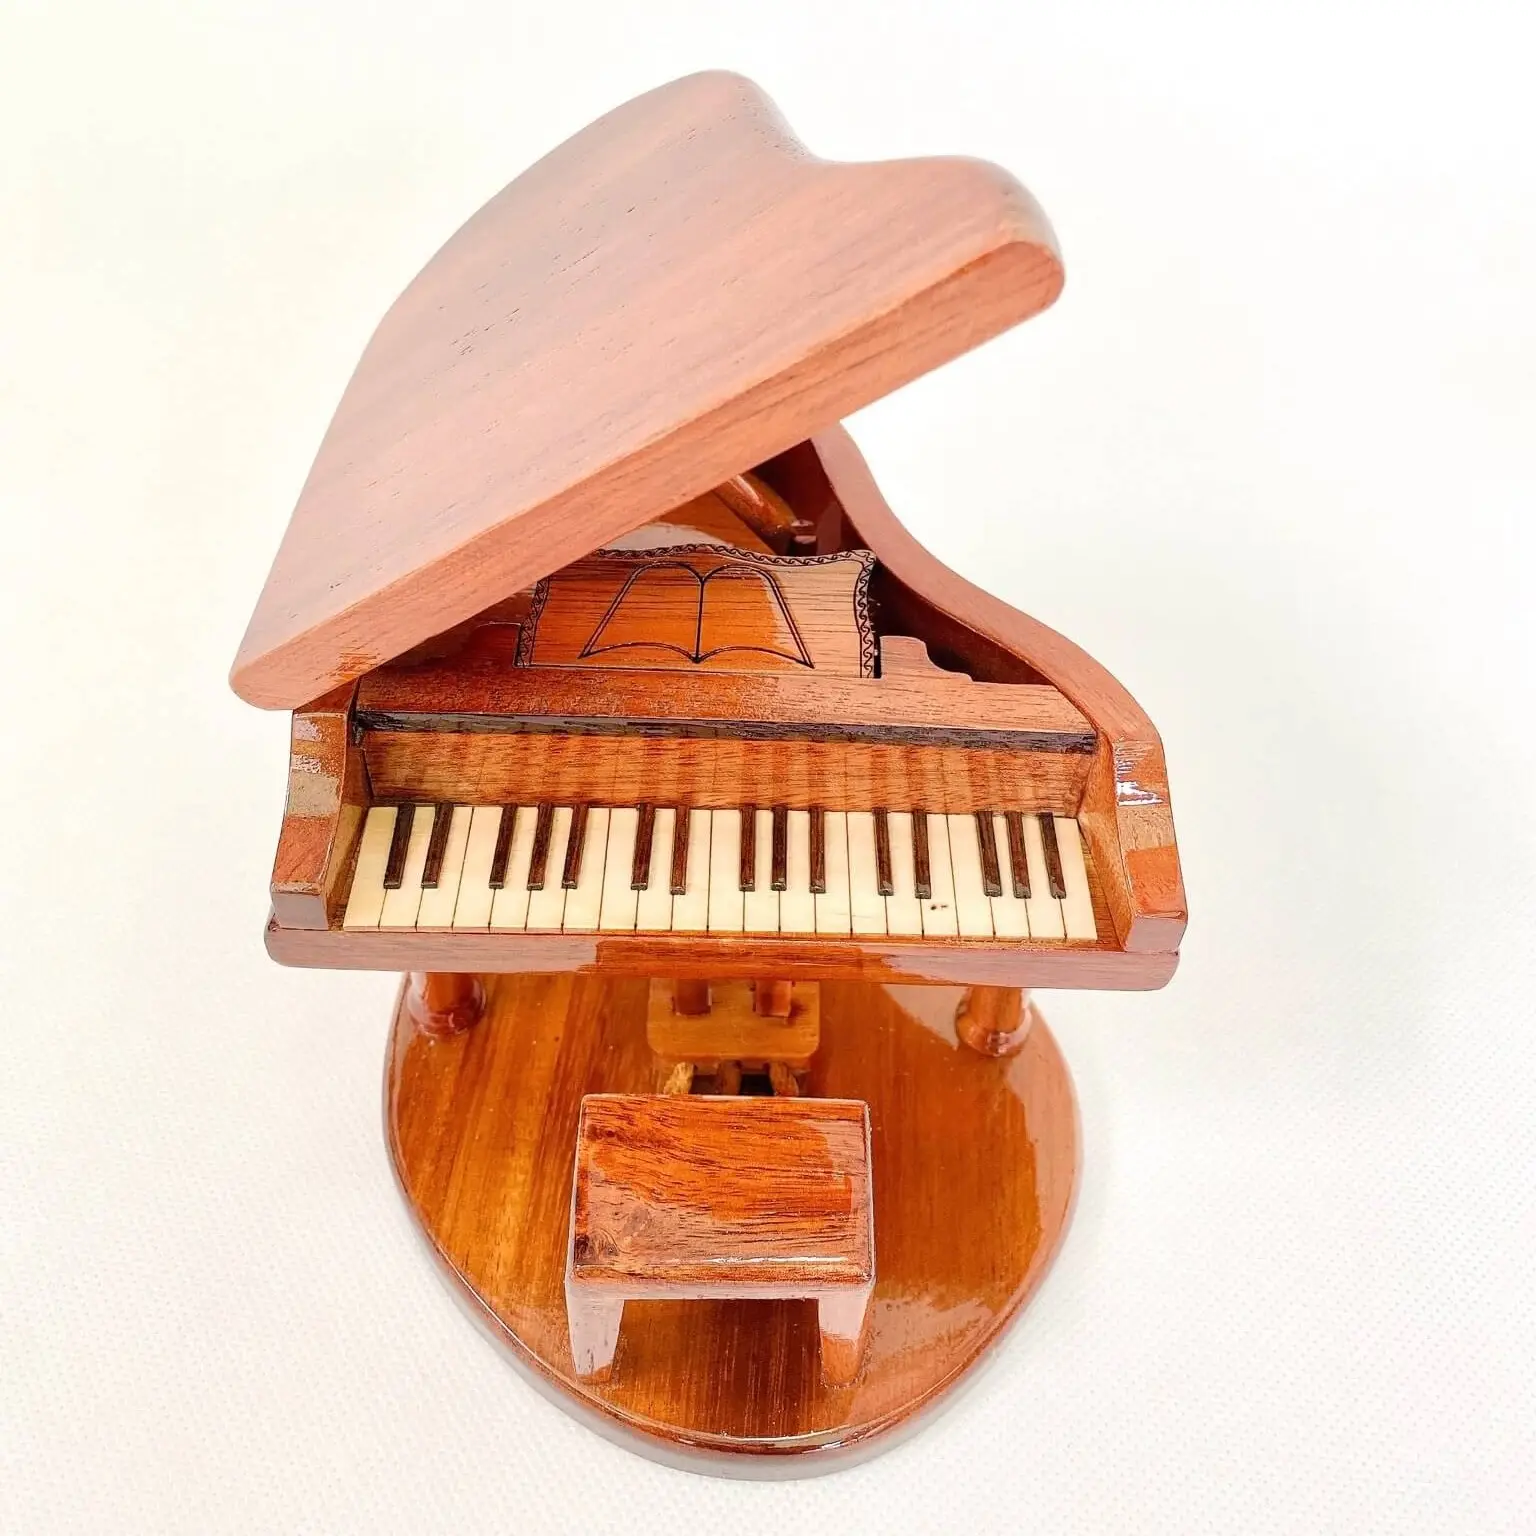 Top alat musik kayu kecil pilihan, instrumen dekorasi interior piano miniatur indah kayu